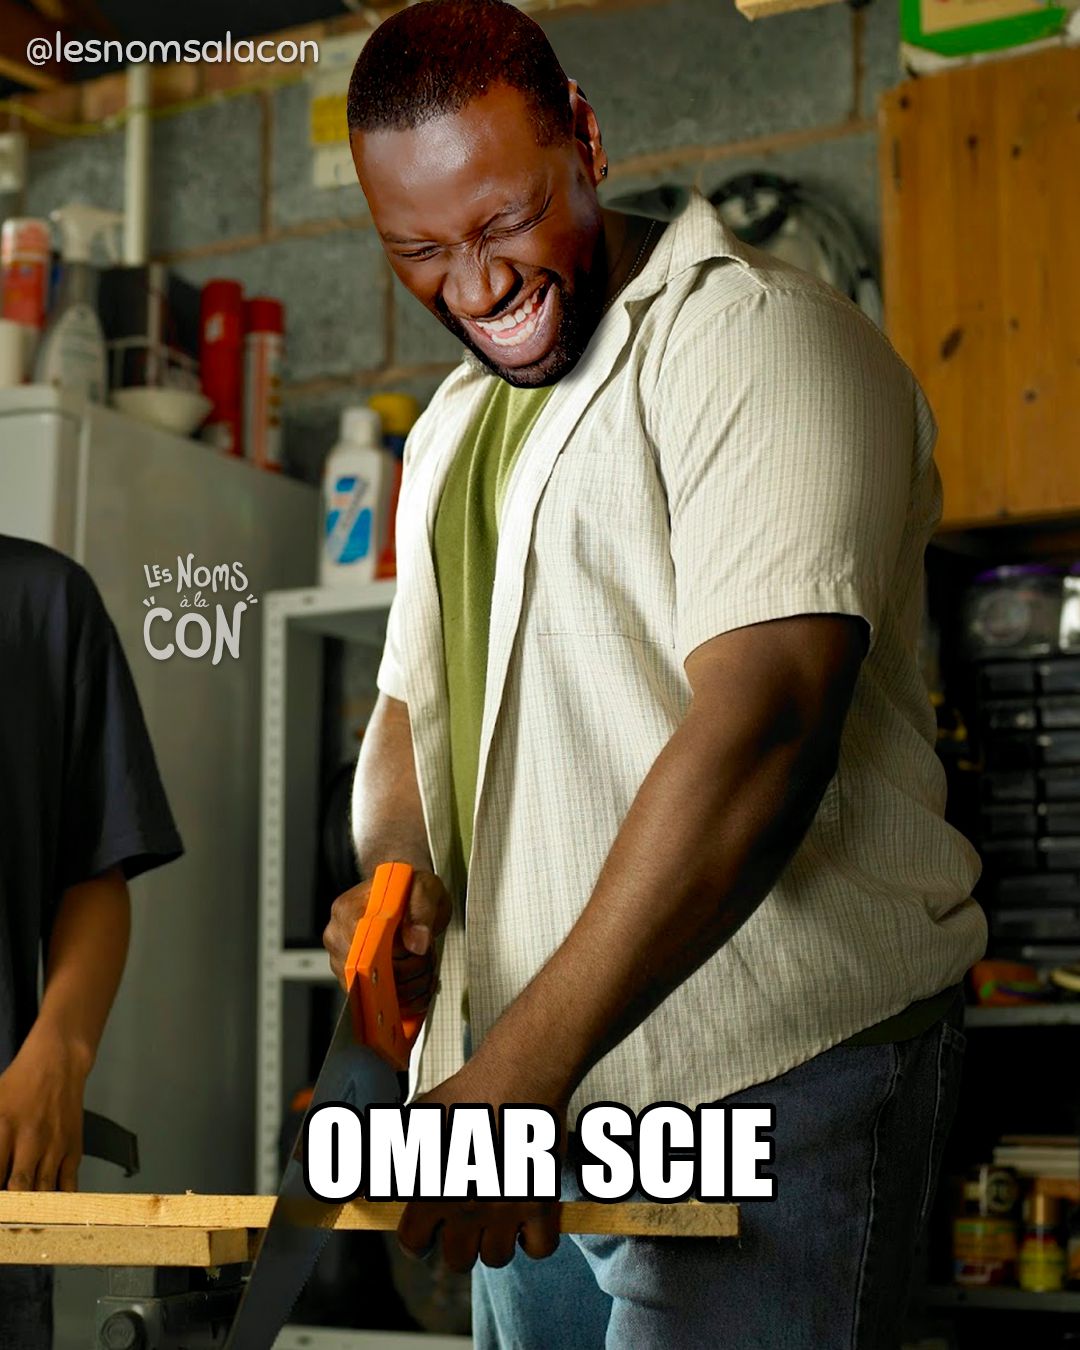 Omar Scie